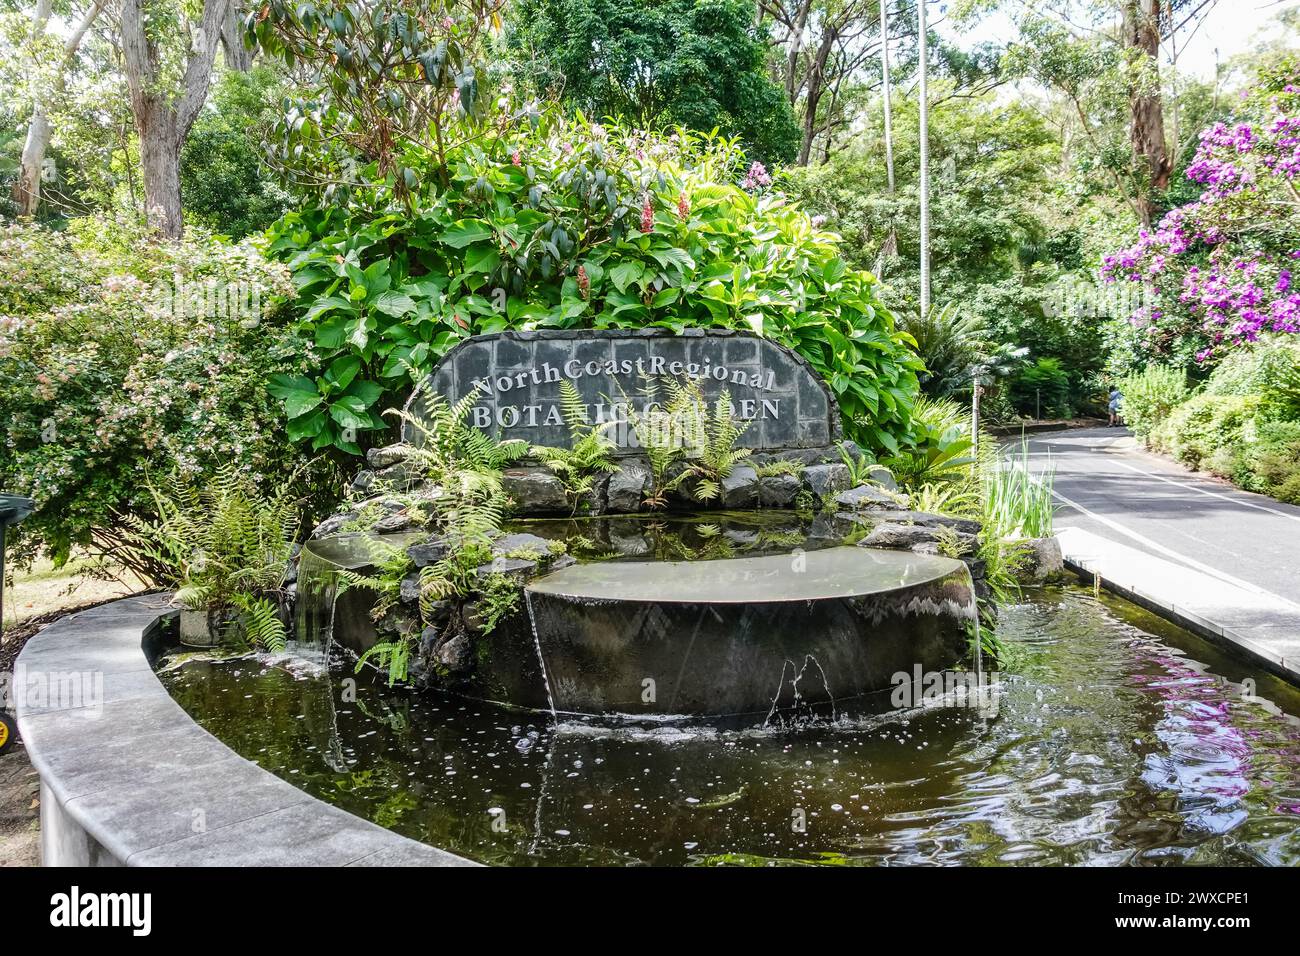 Der North Coast Regional Botanic Garden in Coffs Harbour bietet vielfältige Pflanzensammlungen inmitten üppiger Landschaften. Besucher können die thematische Garde erkunden Stockfoto